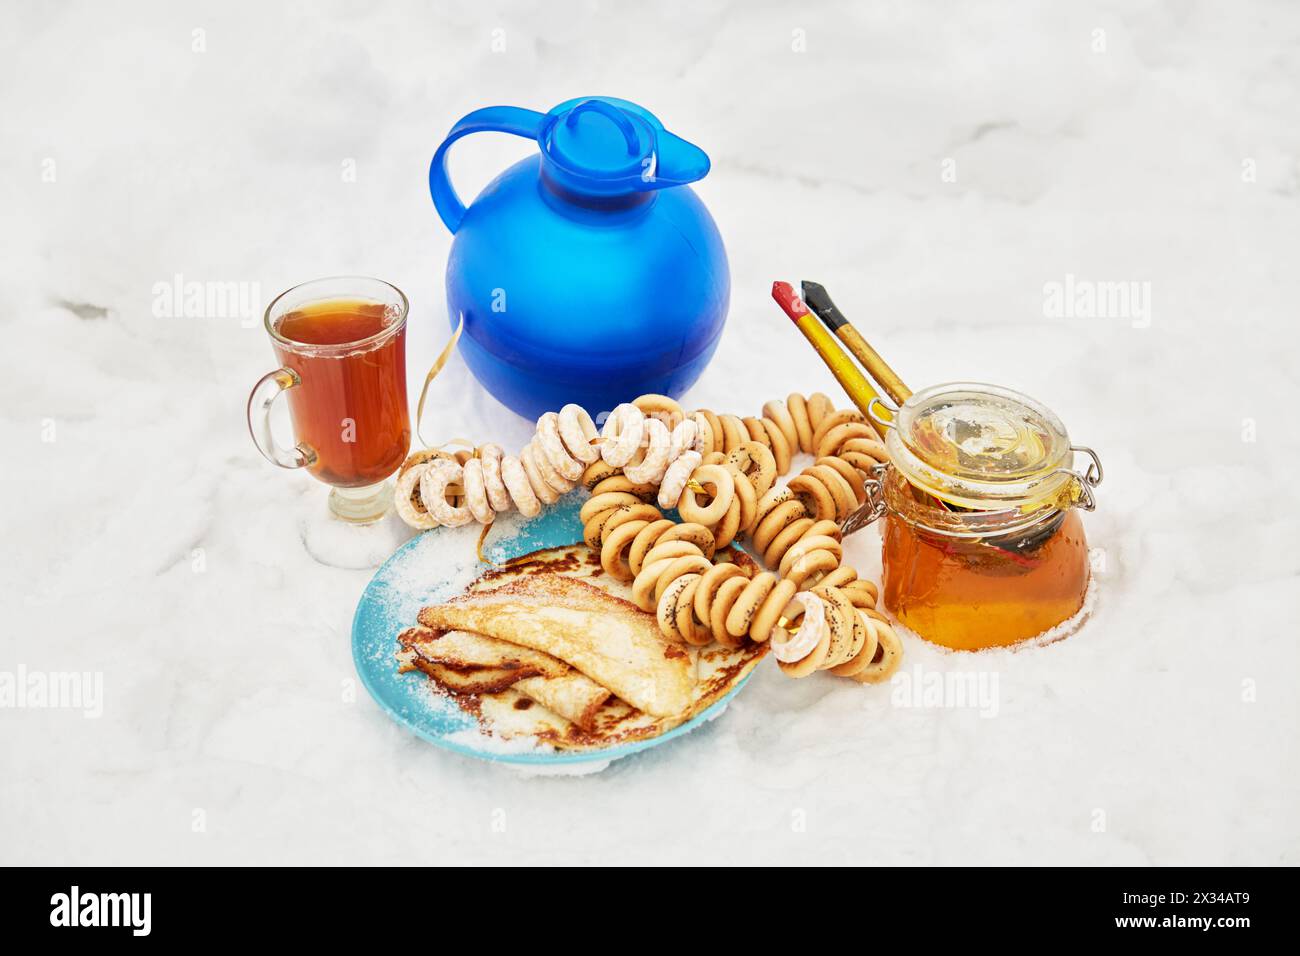 Caraffa blu e tazza in vetro con bevanda, fasci di crackel, vaso di miele, piatto con frittelle sulla neve. Foto Stock